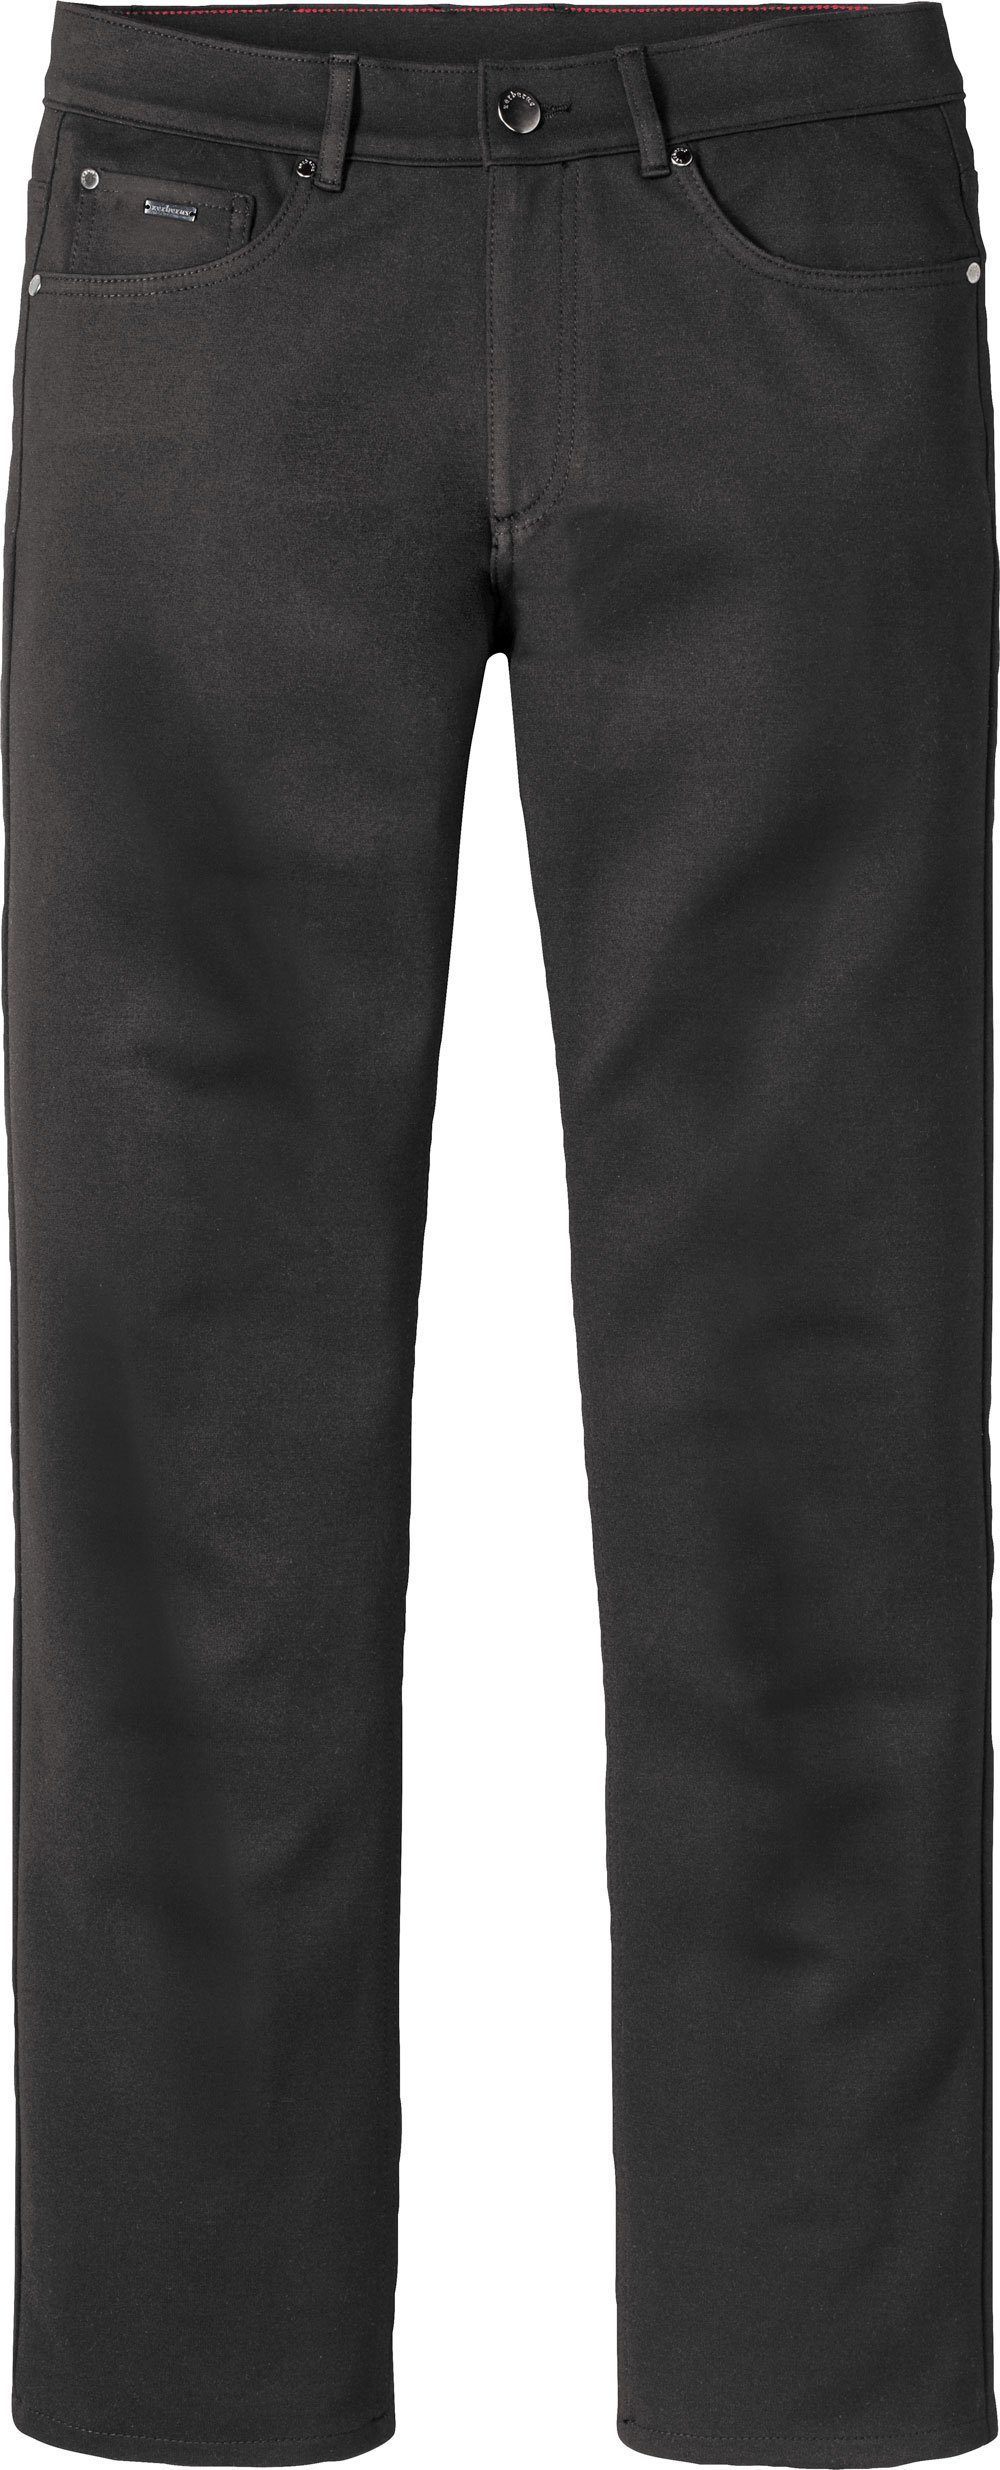 lässigen im 5-Pocket-Stil perfekte Zerberus Passform, Jerseyhose schwarz